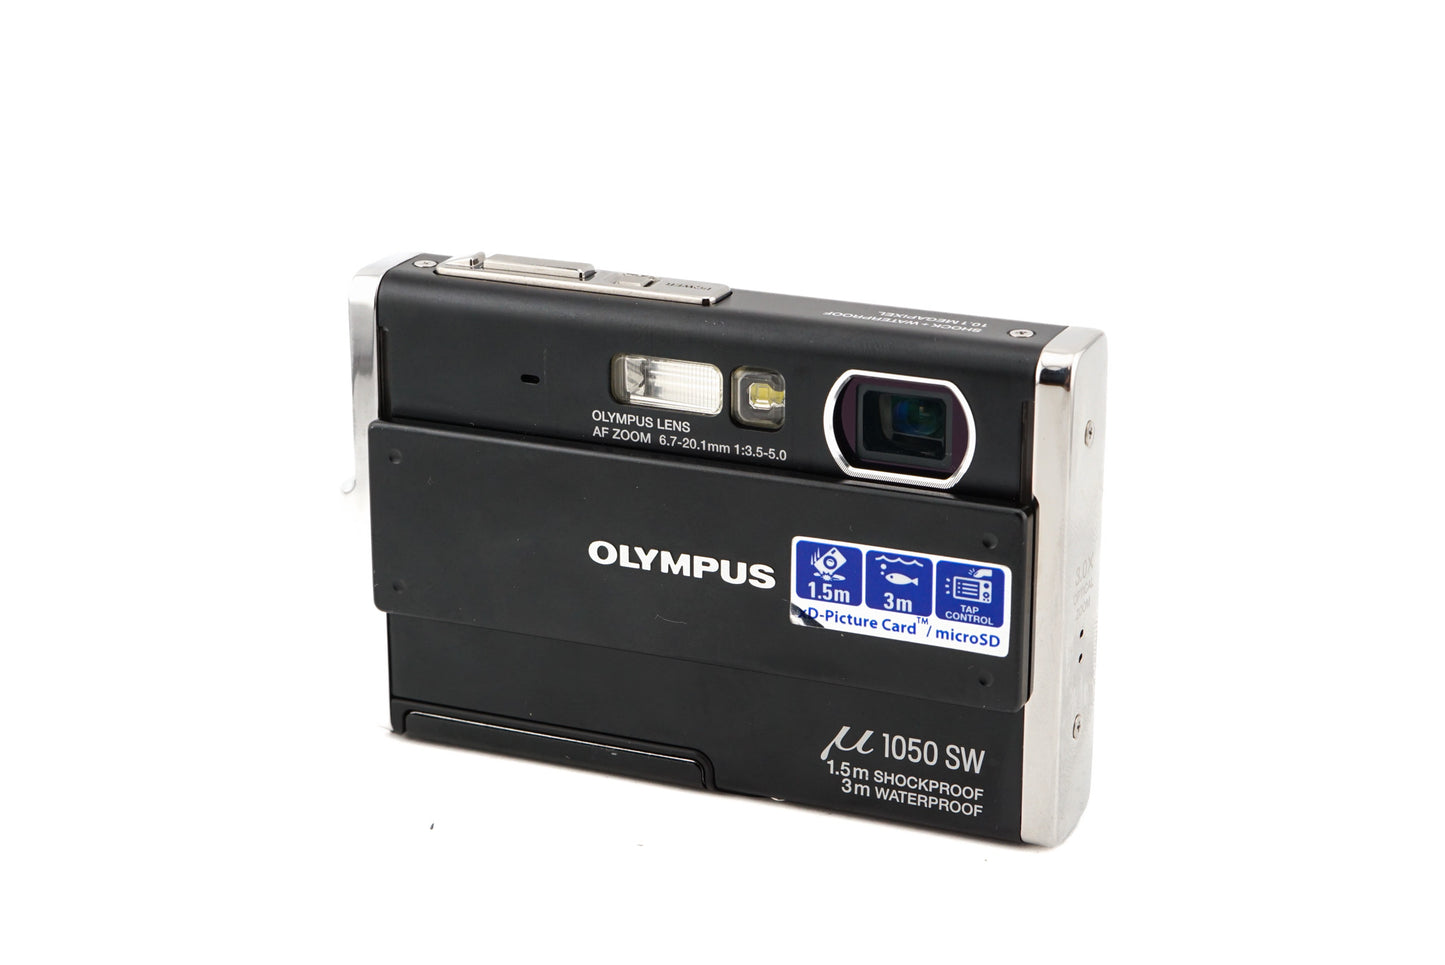 Olympus Mju 1050 SW - Camera